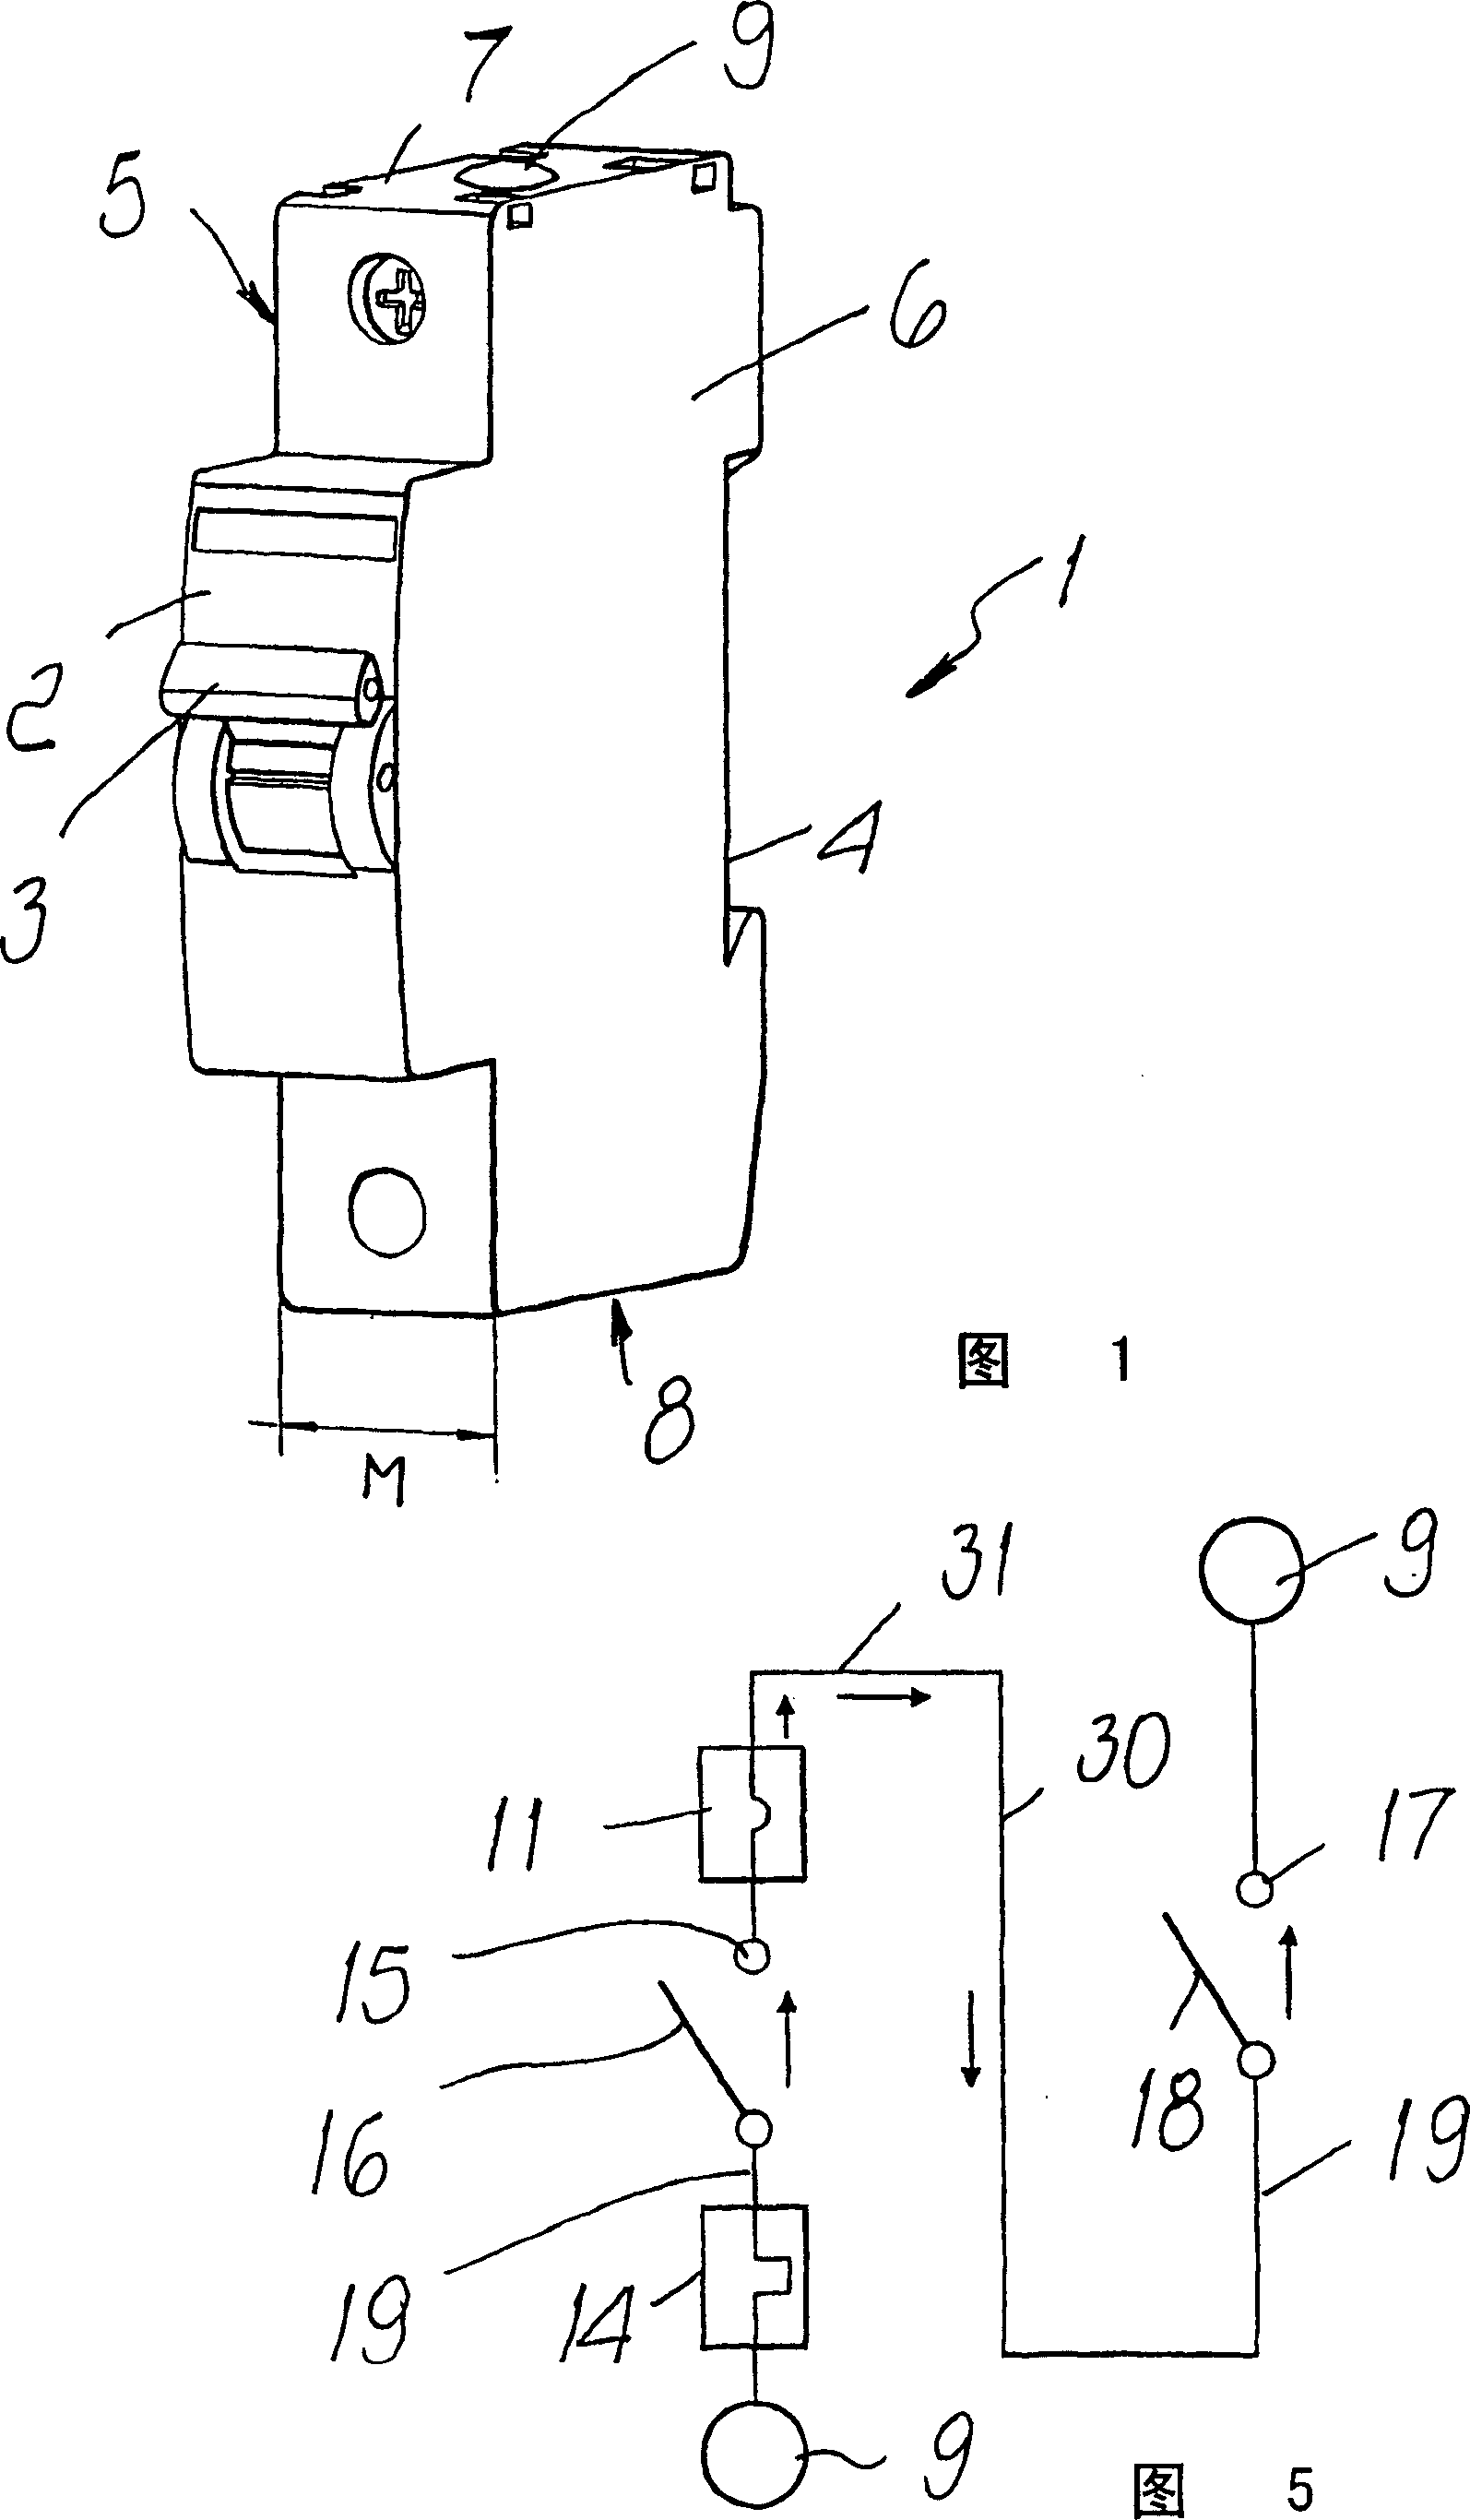 Miniature circuit breaker pole